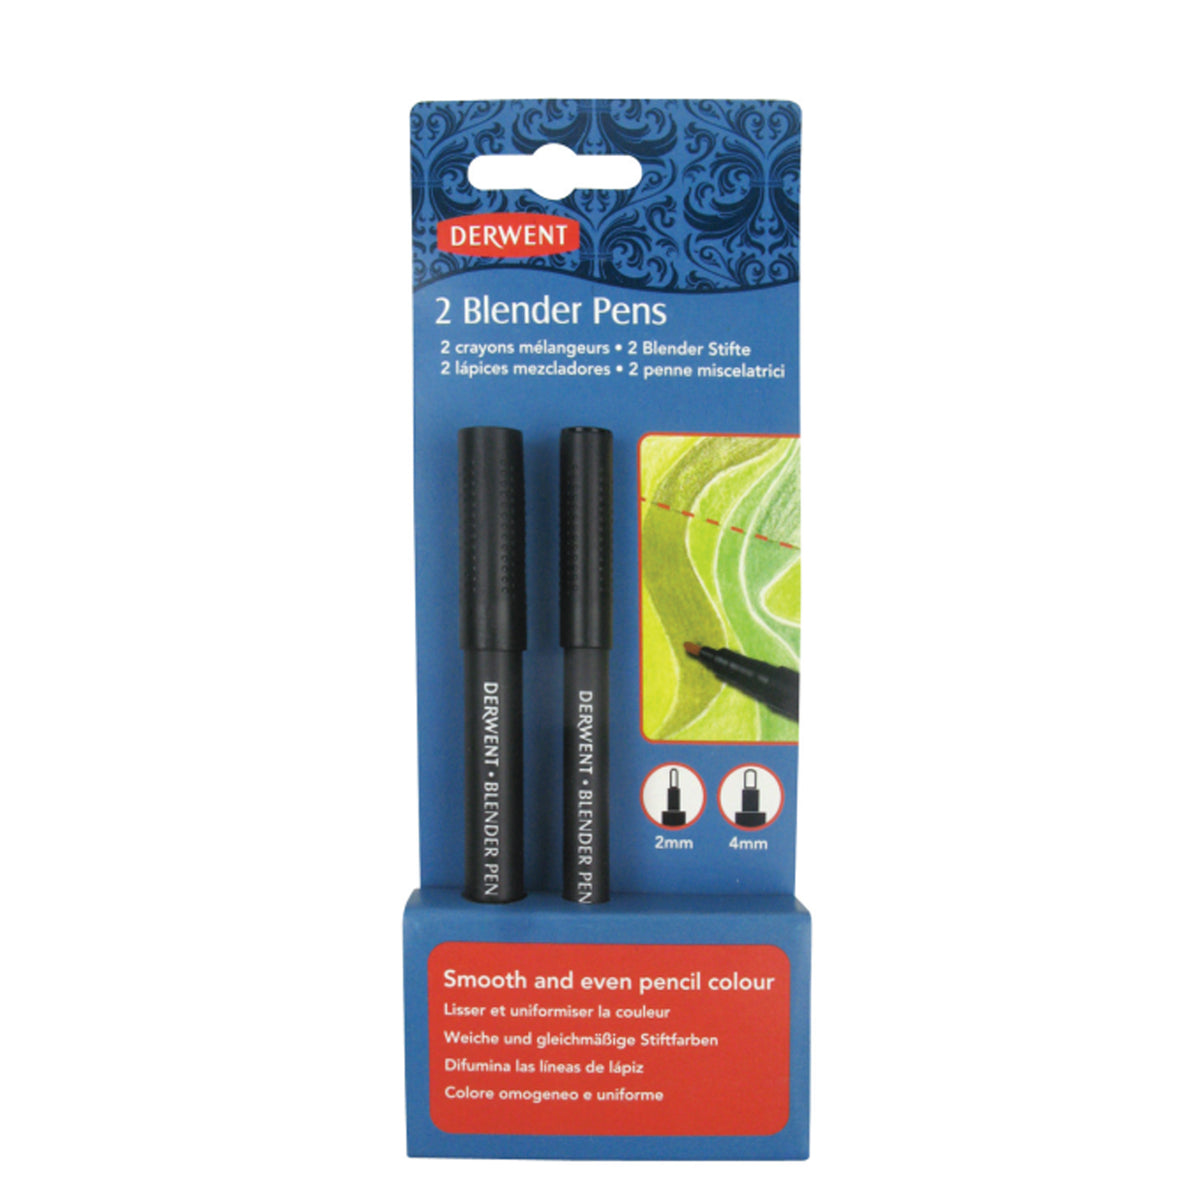 Derwent - 2 Blender Pens in box